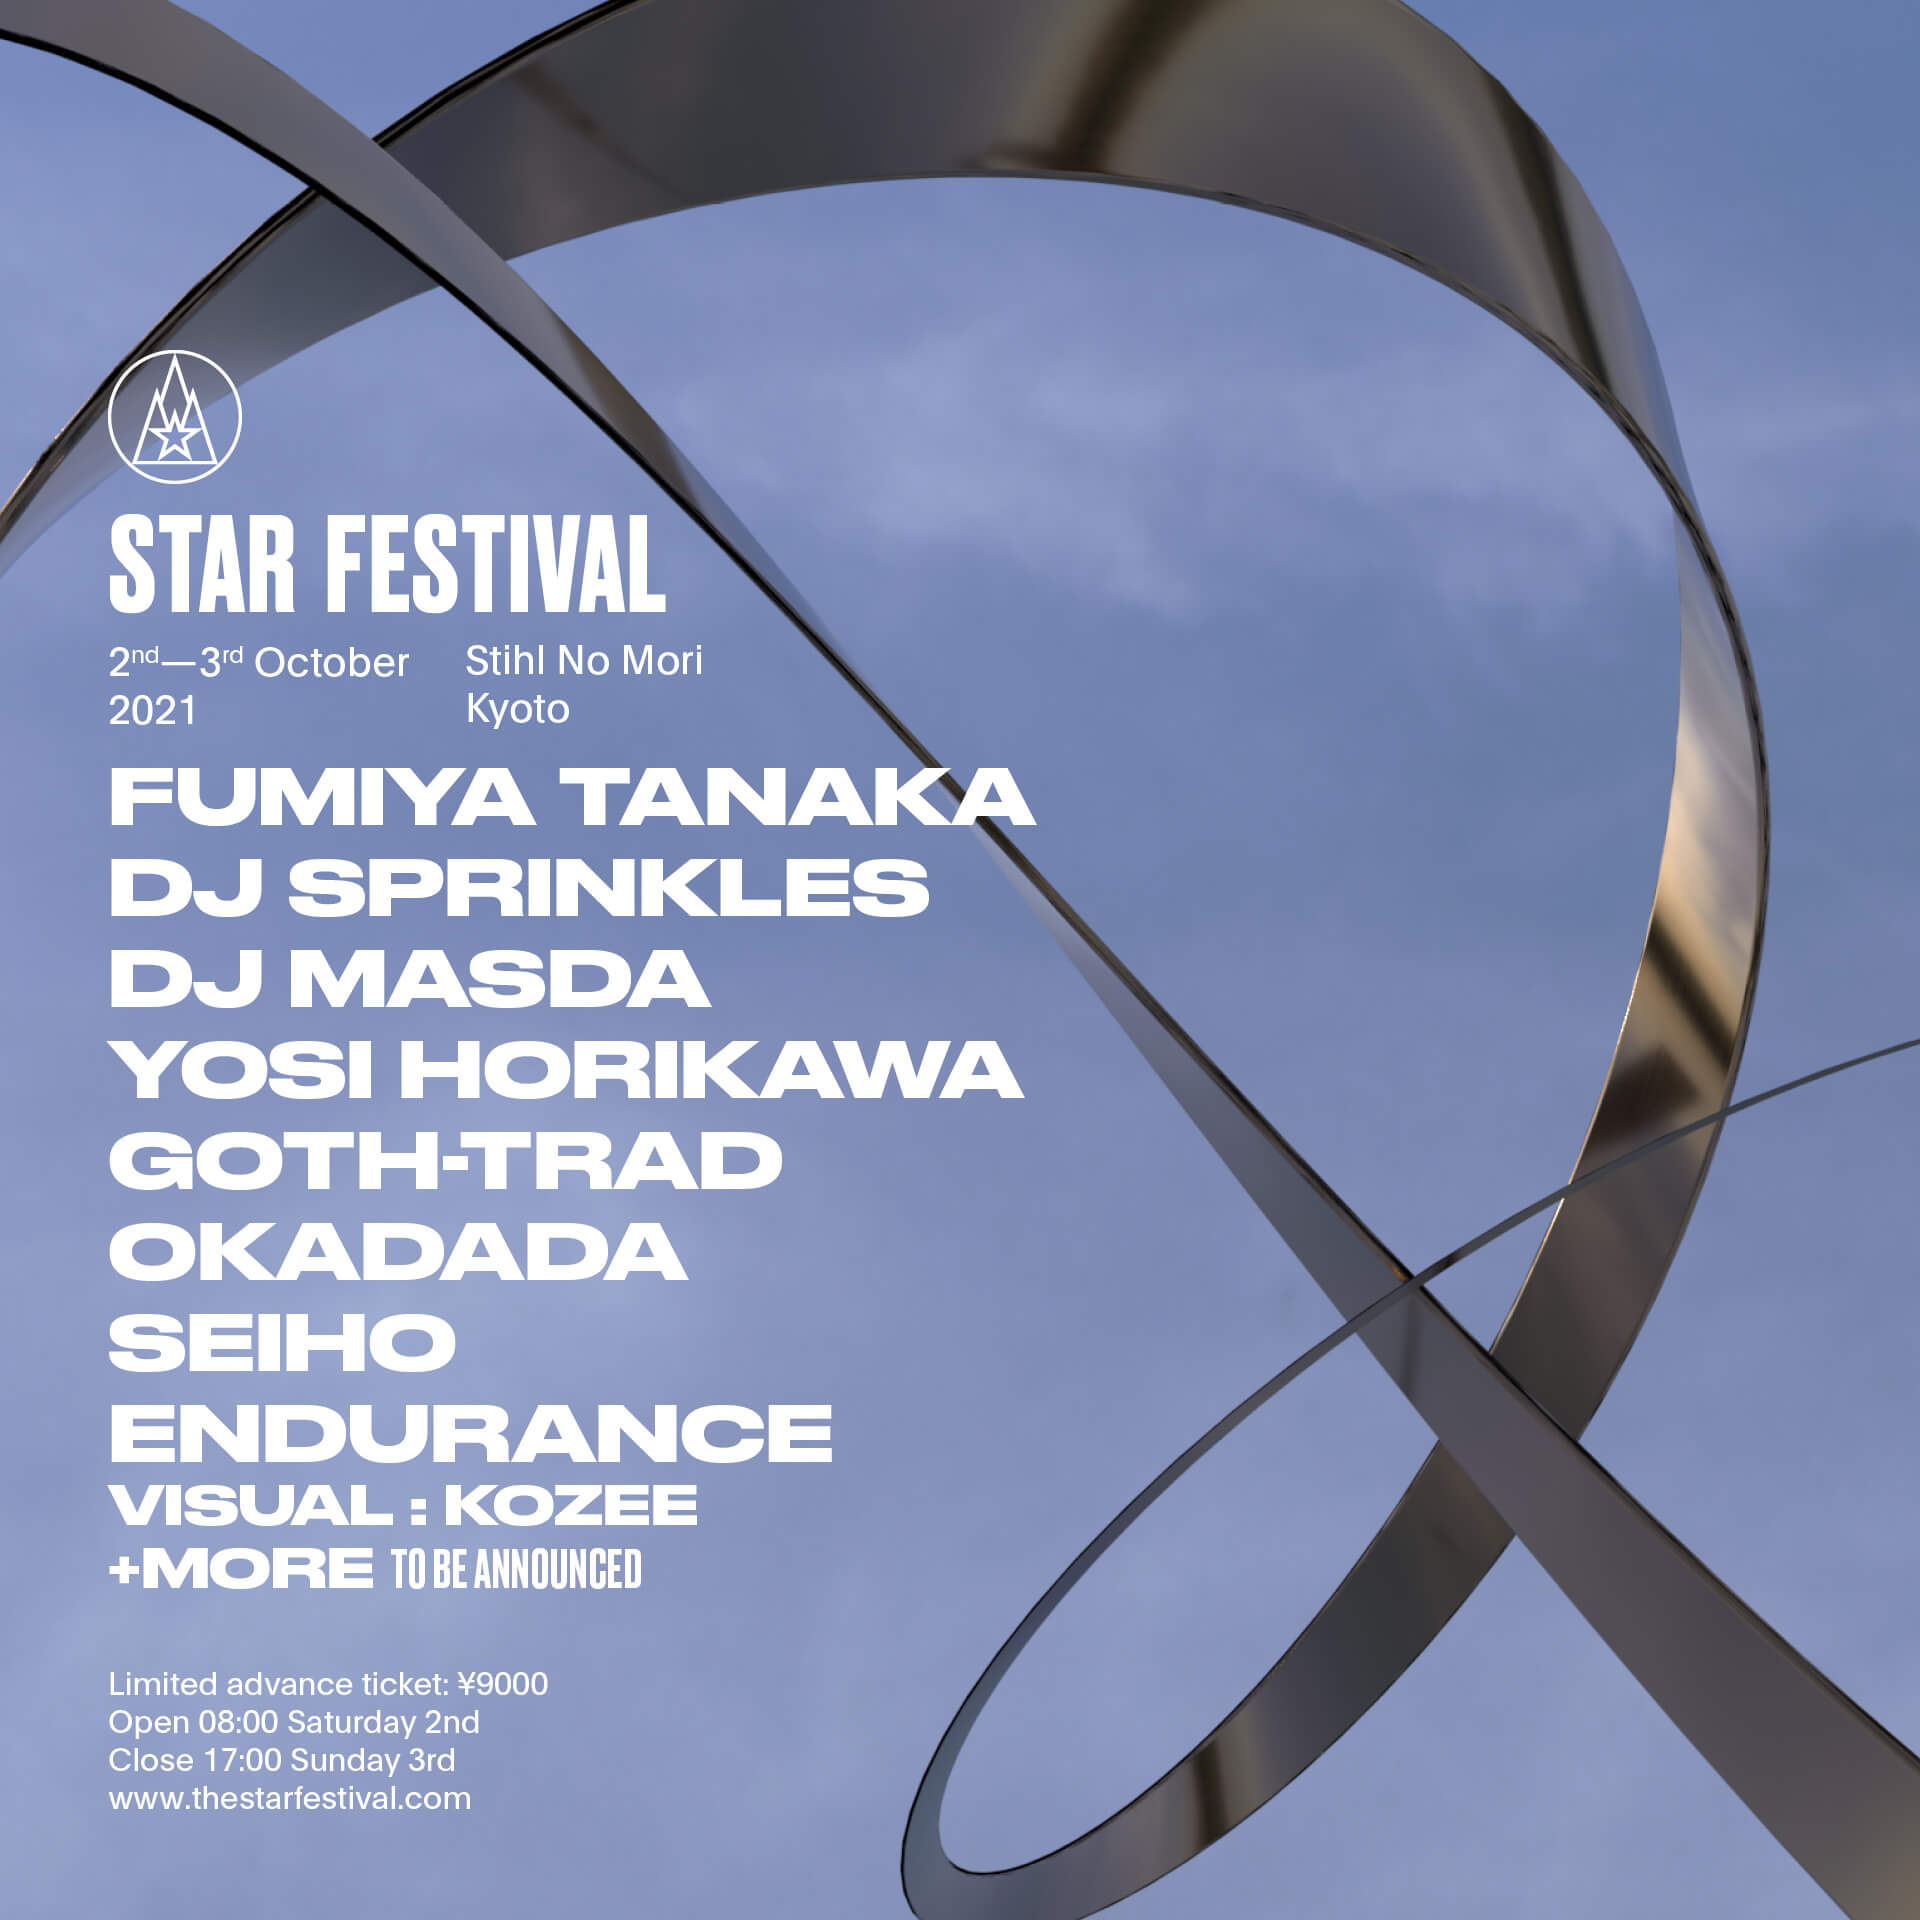 今年も＜STAR FESTIVAL＞開催へ！第1弾ラインナップとしてDJ SPRINKLES、okadada、Seiho、dj masdaらが発表 music210707_starfestival_10